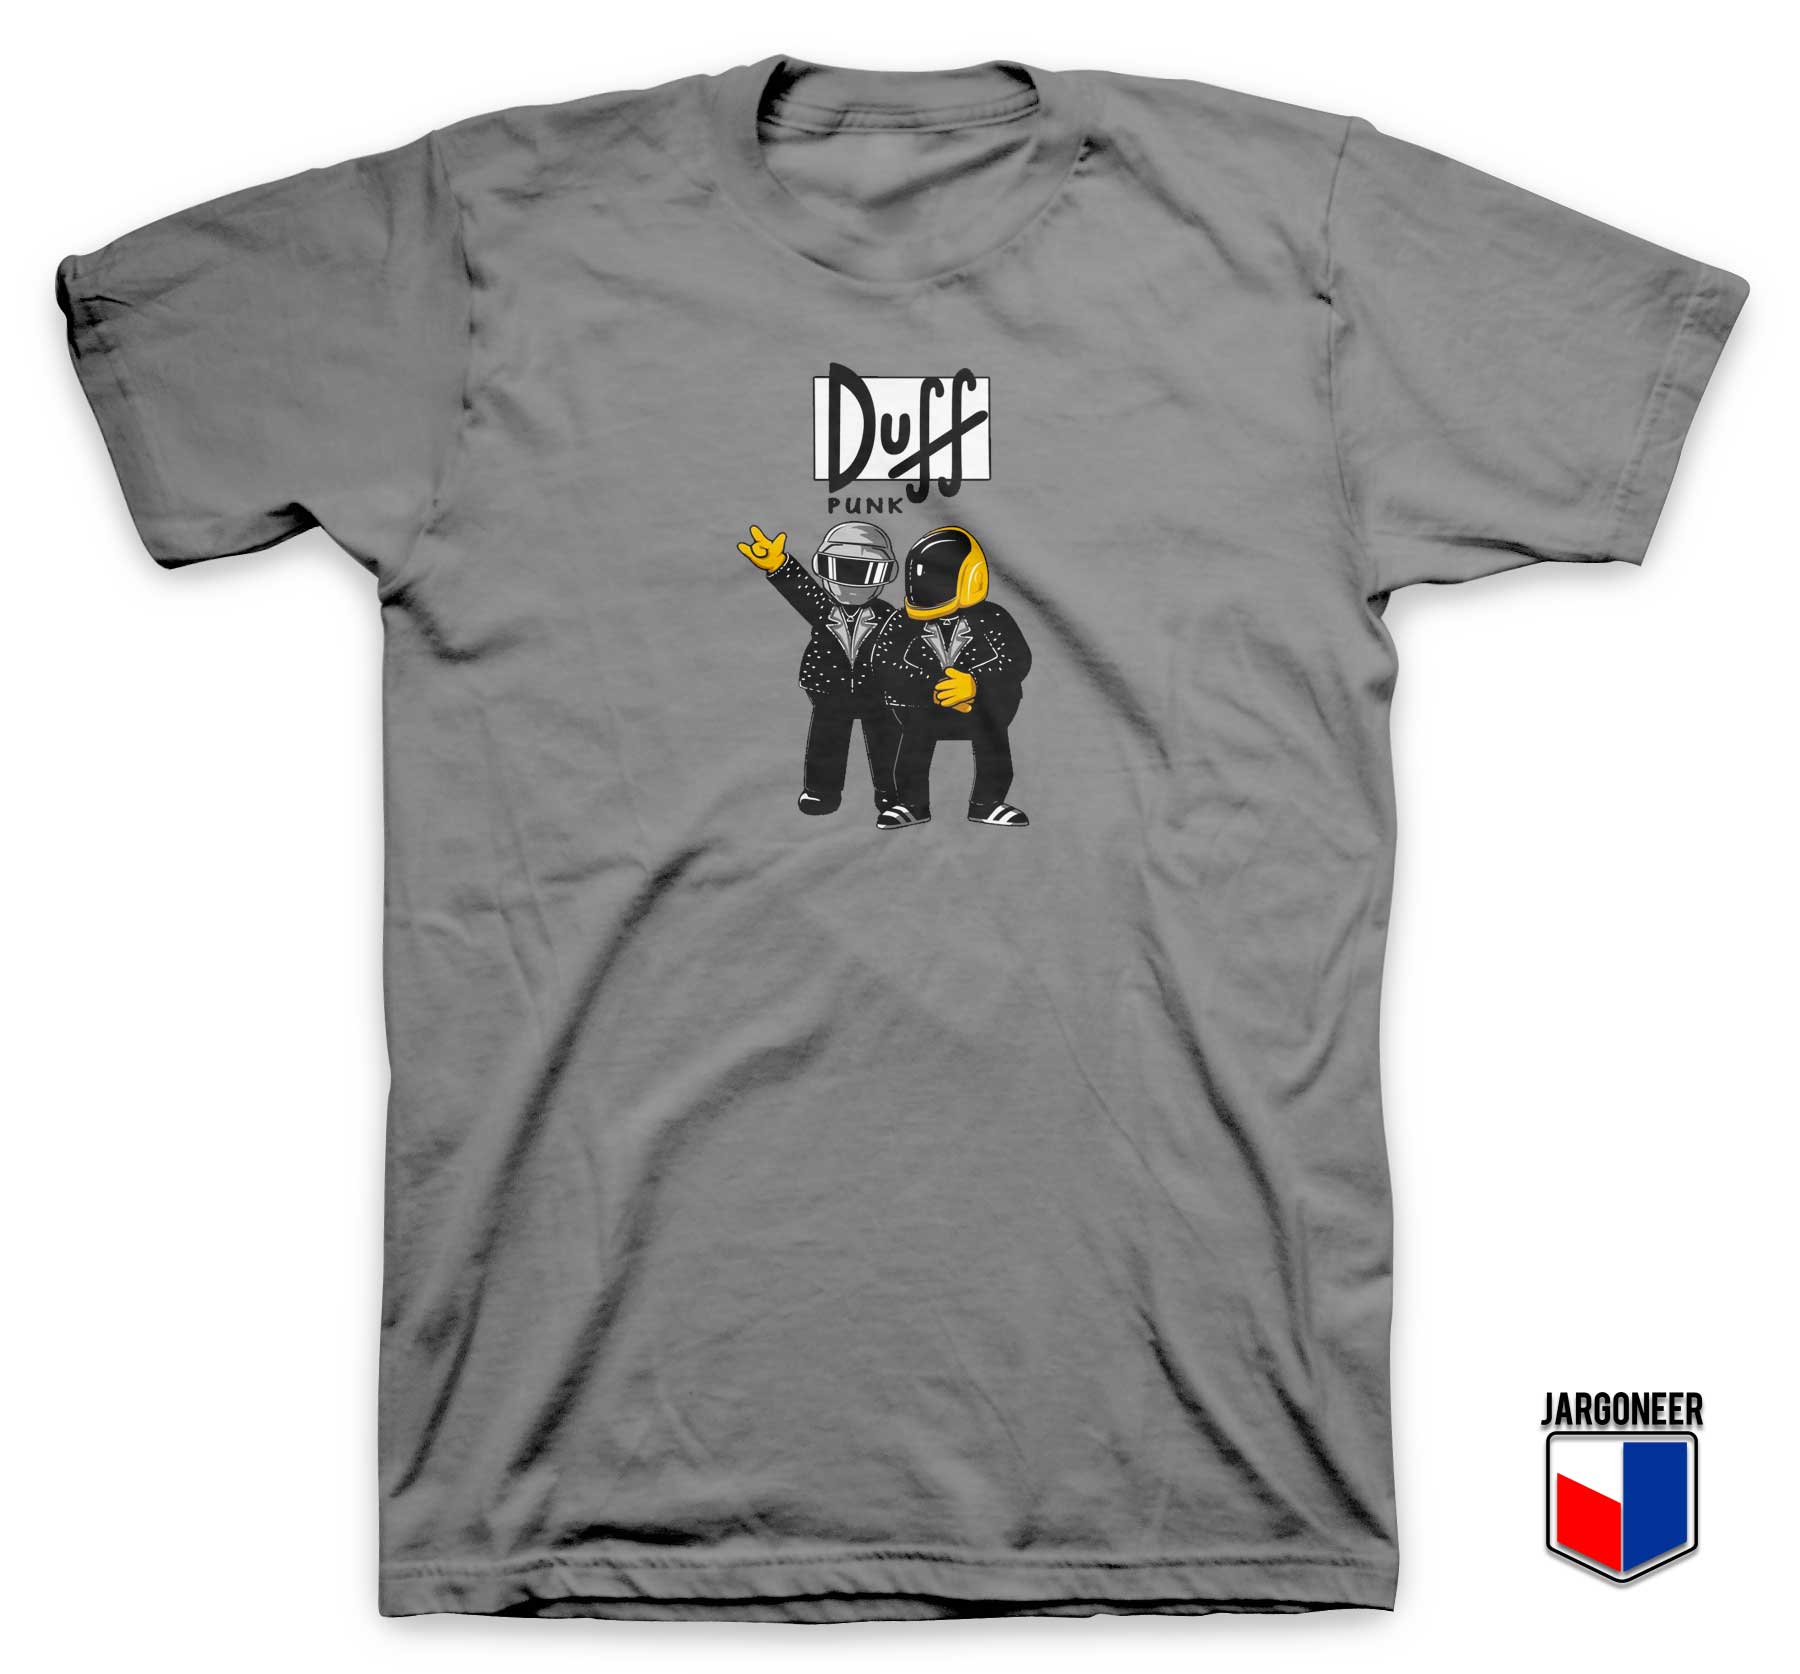 Duff Punk Parody T Shirt - Shop Unique Graphic Cool Shirt Designs